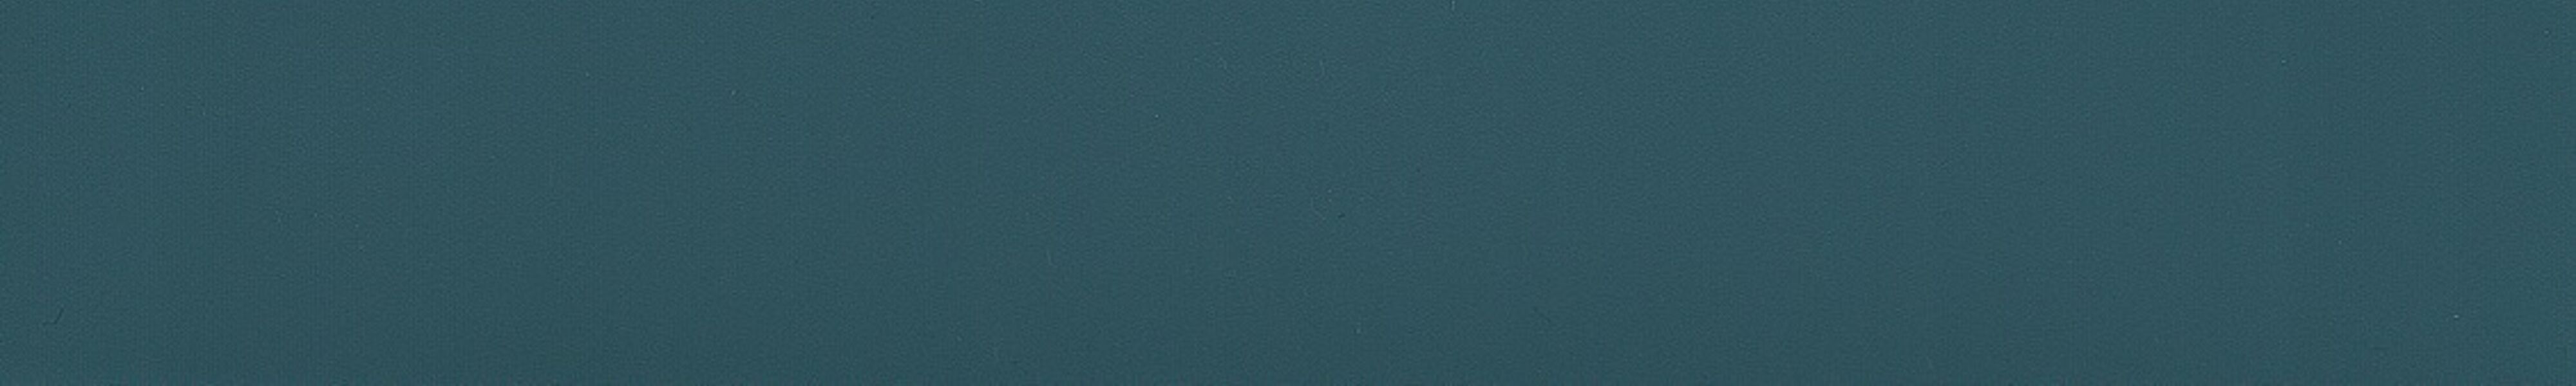 skai® colore classico aquablau           0,40 1420